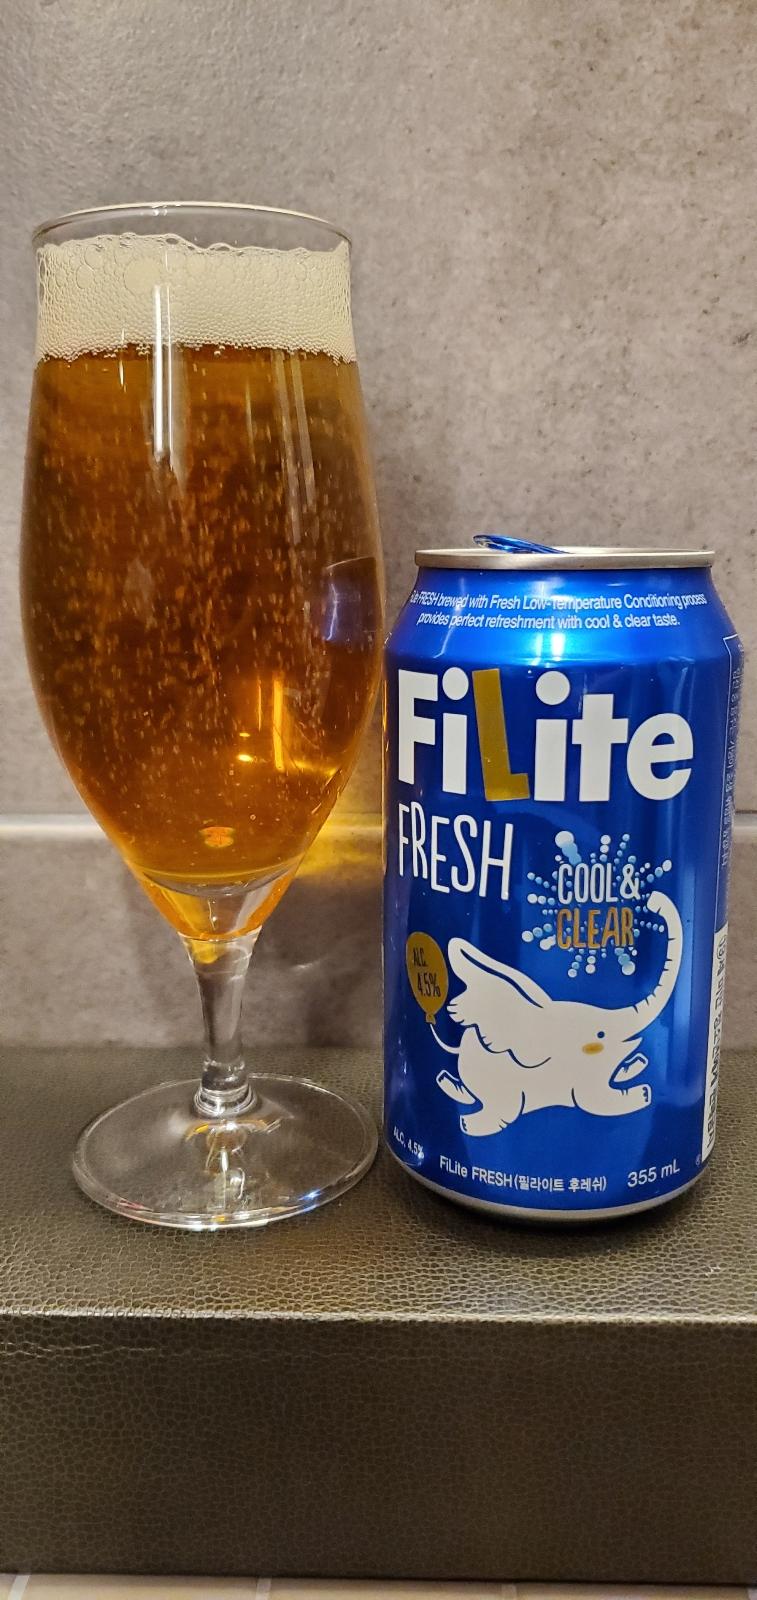 Filite Fresh